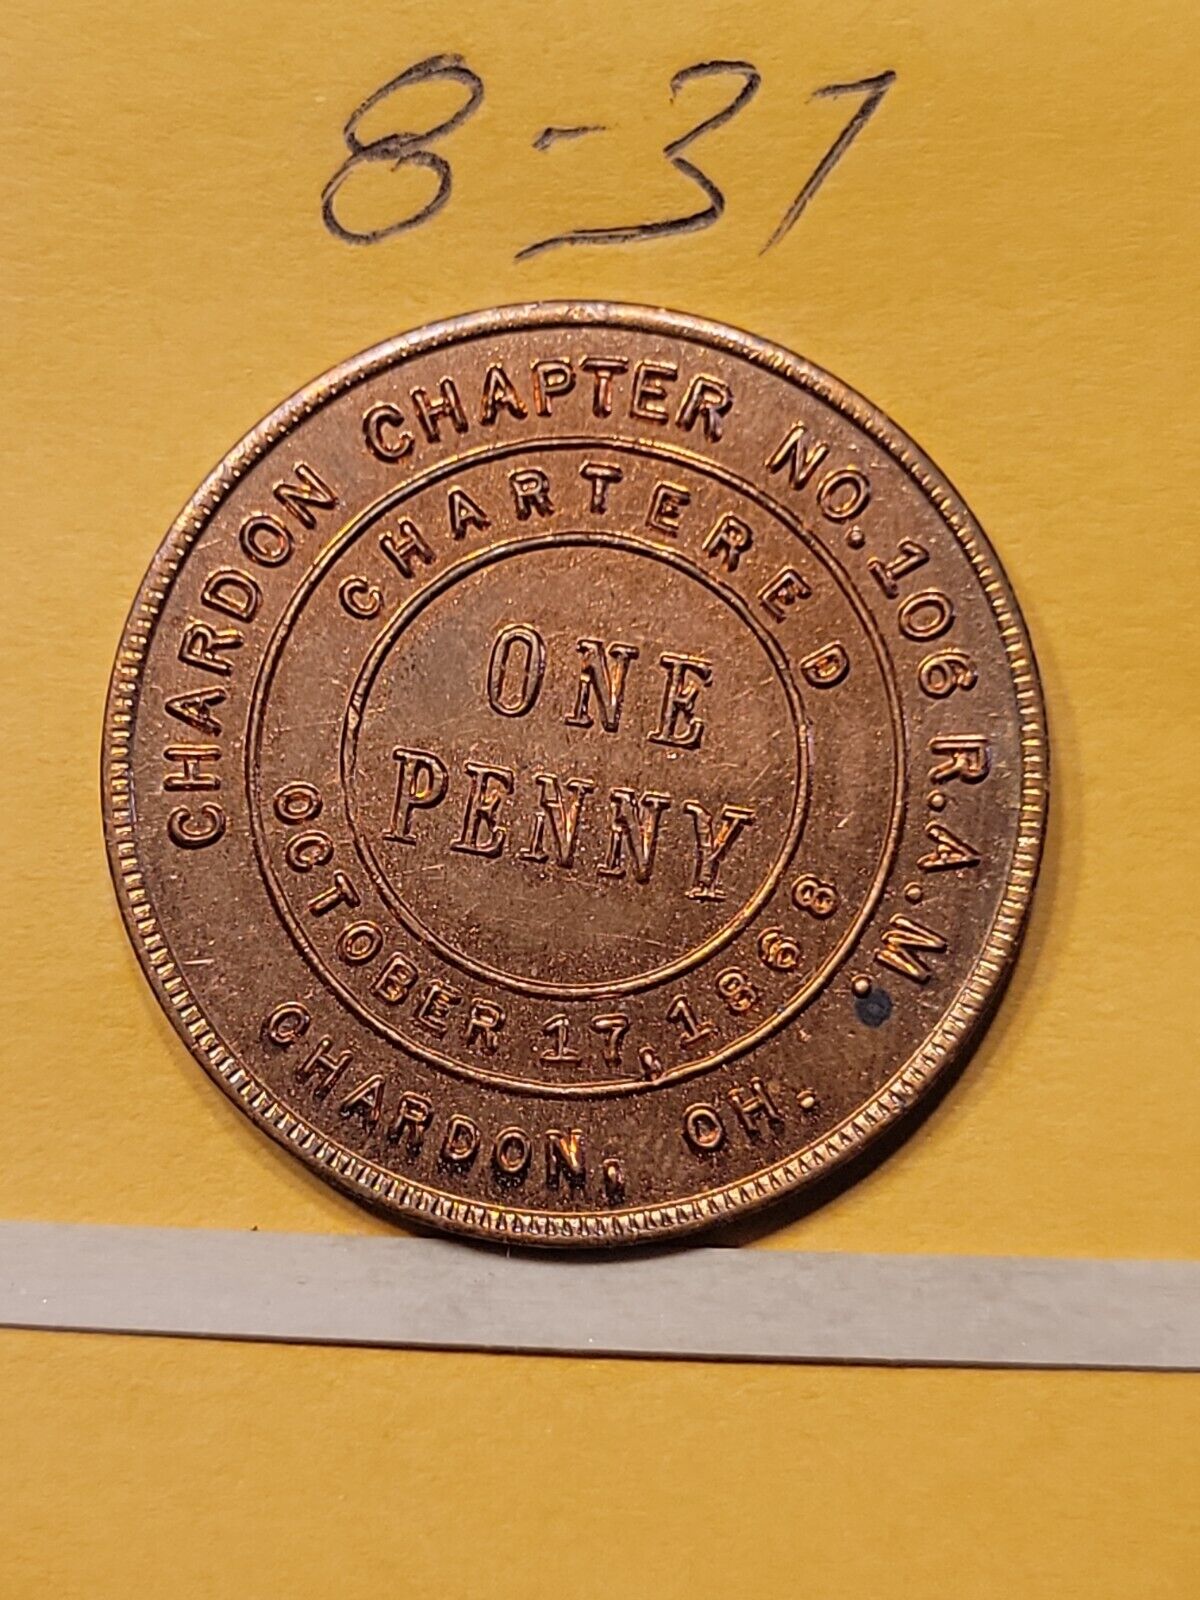 Chardon Ohio Masonic Penny No 106 Chartered October  17 1868 lot     8-37